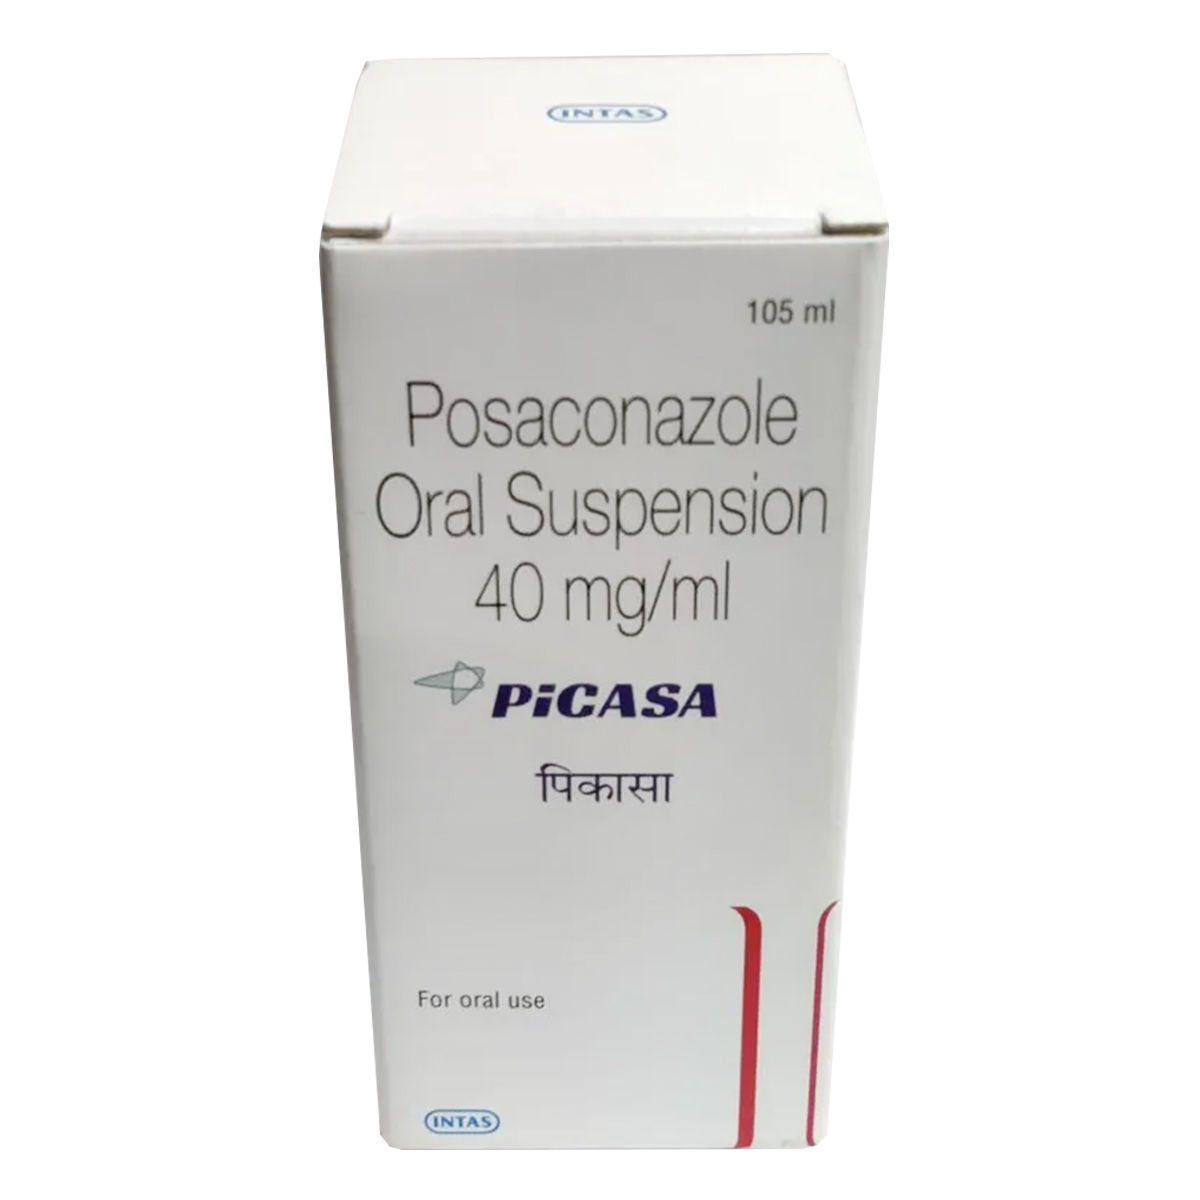 Buy Picasa Oral Suspension 105 ml Online